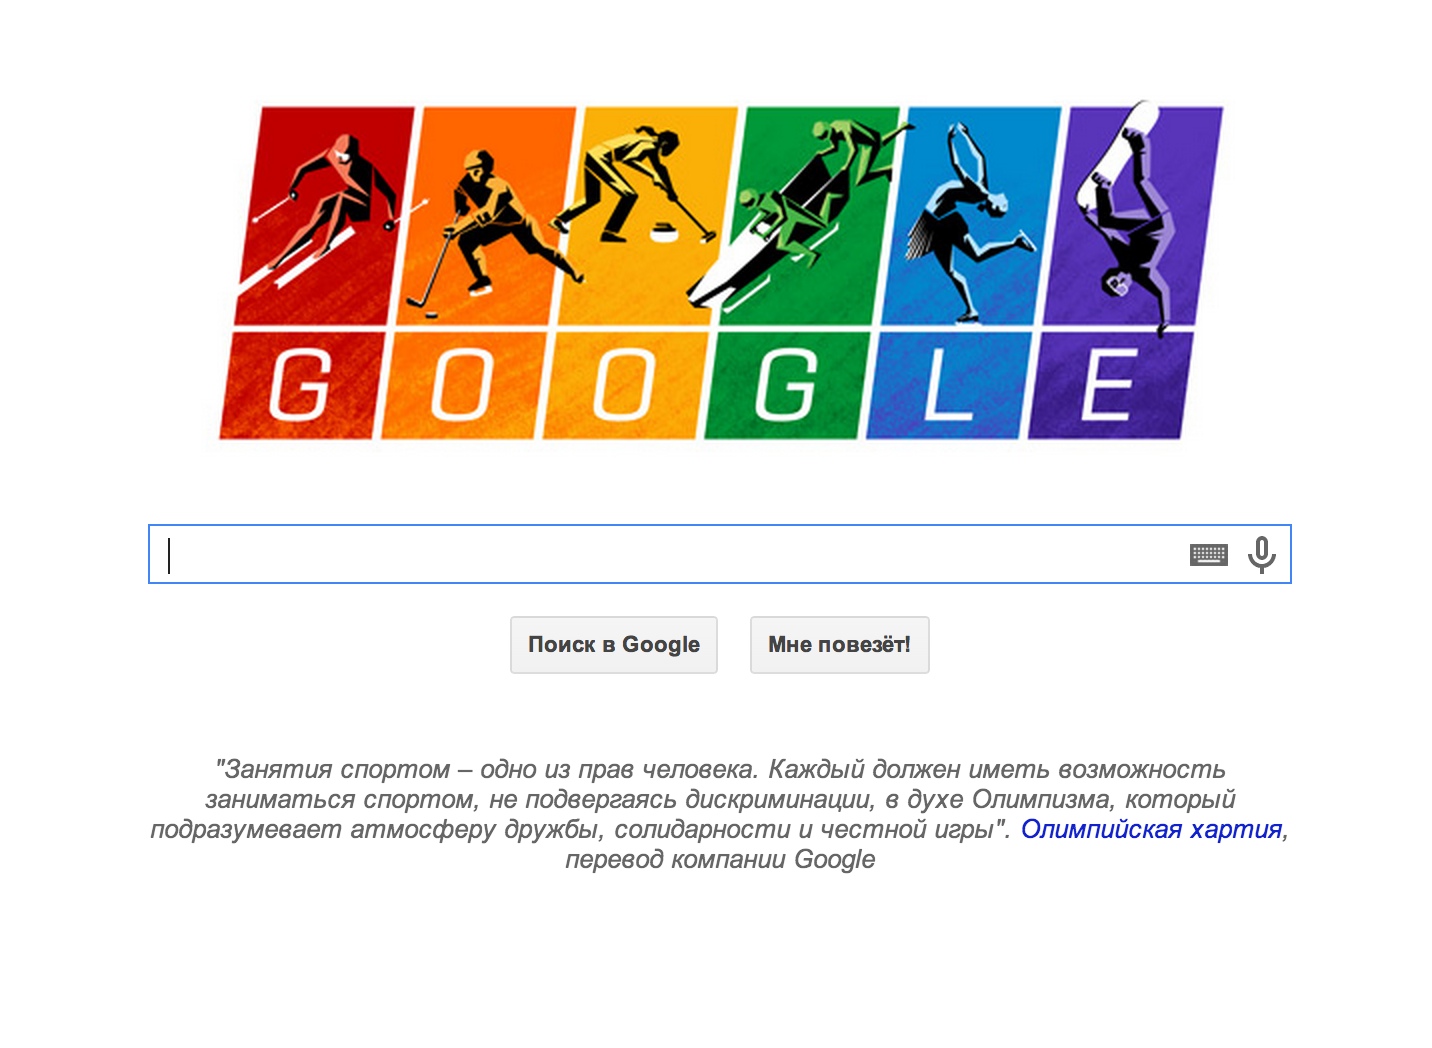 Google издевается над Олимпиадой/И флаг лгбт!